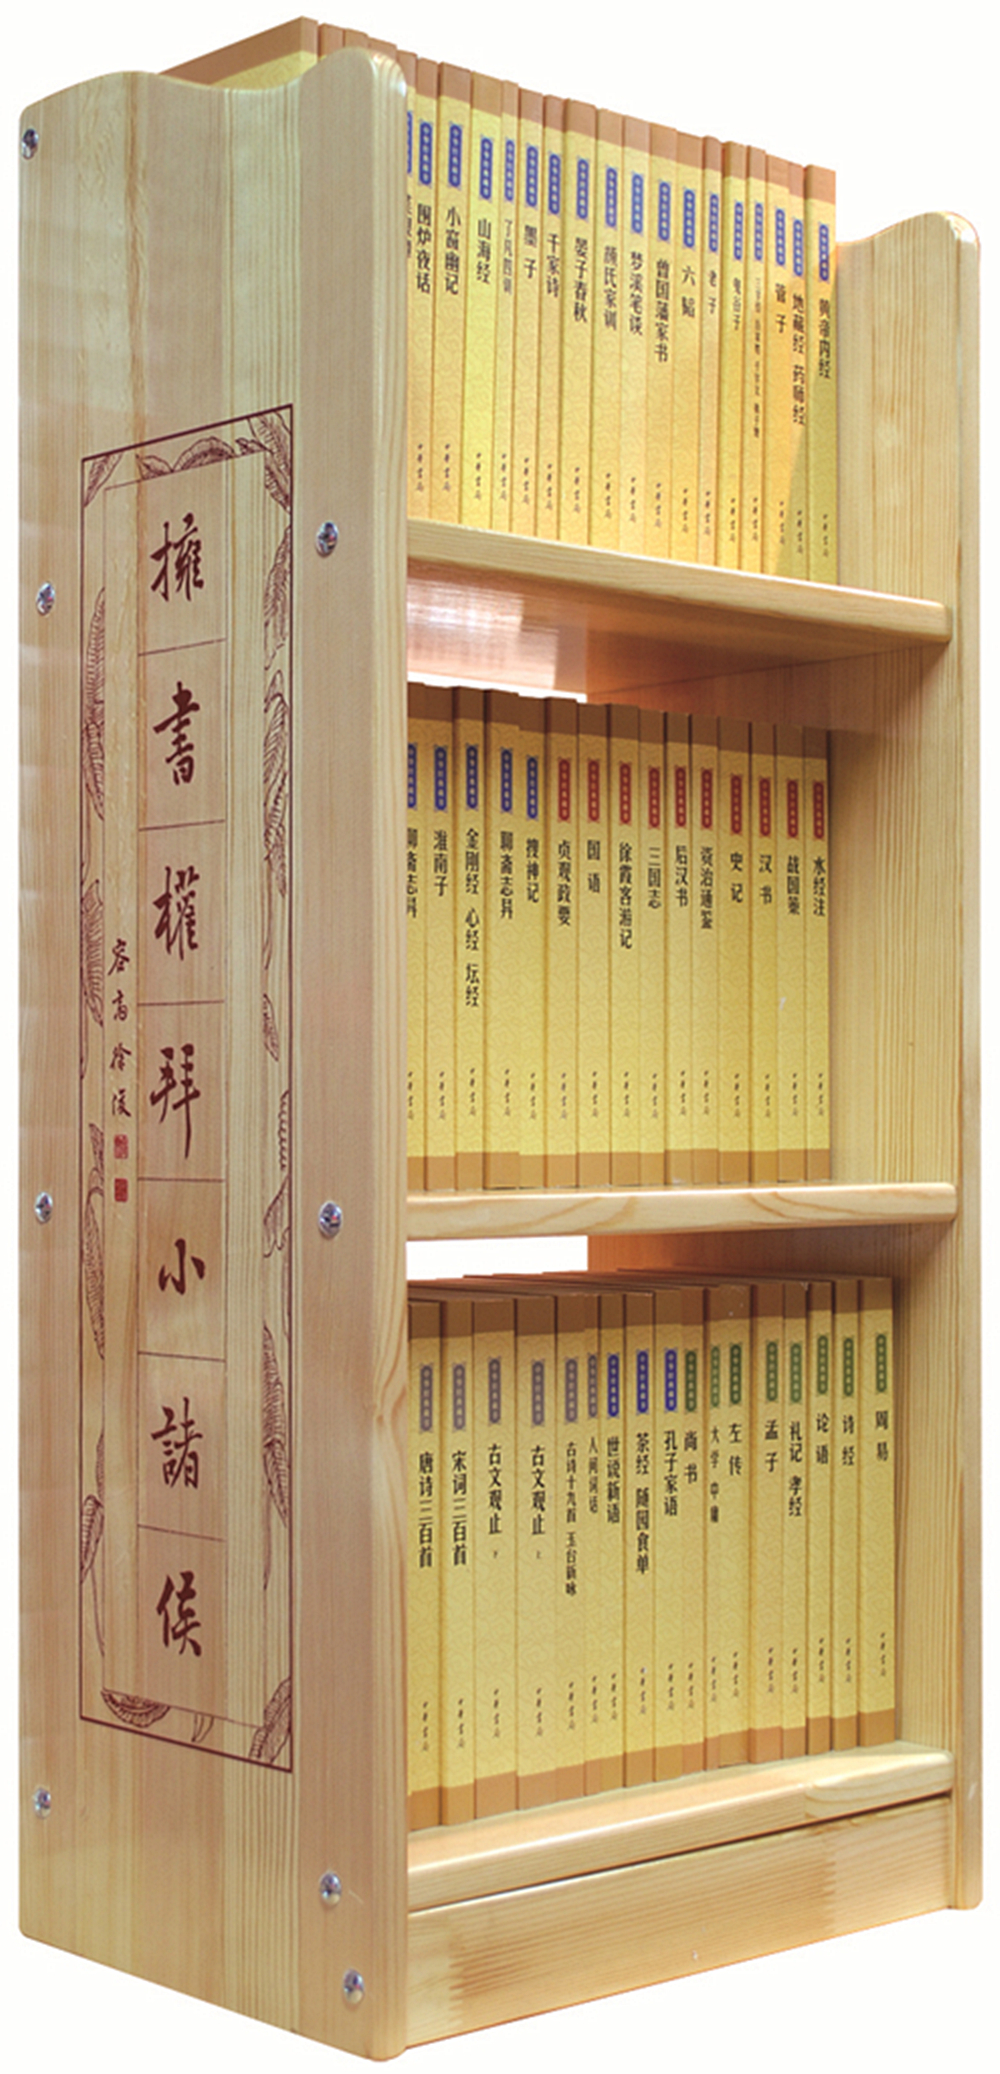 中华书局经典藏书丛书书架装有书架吗？